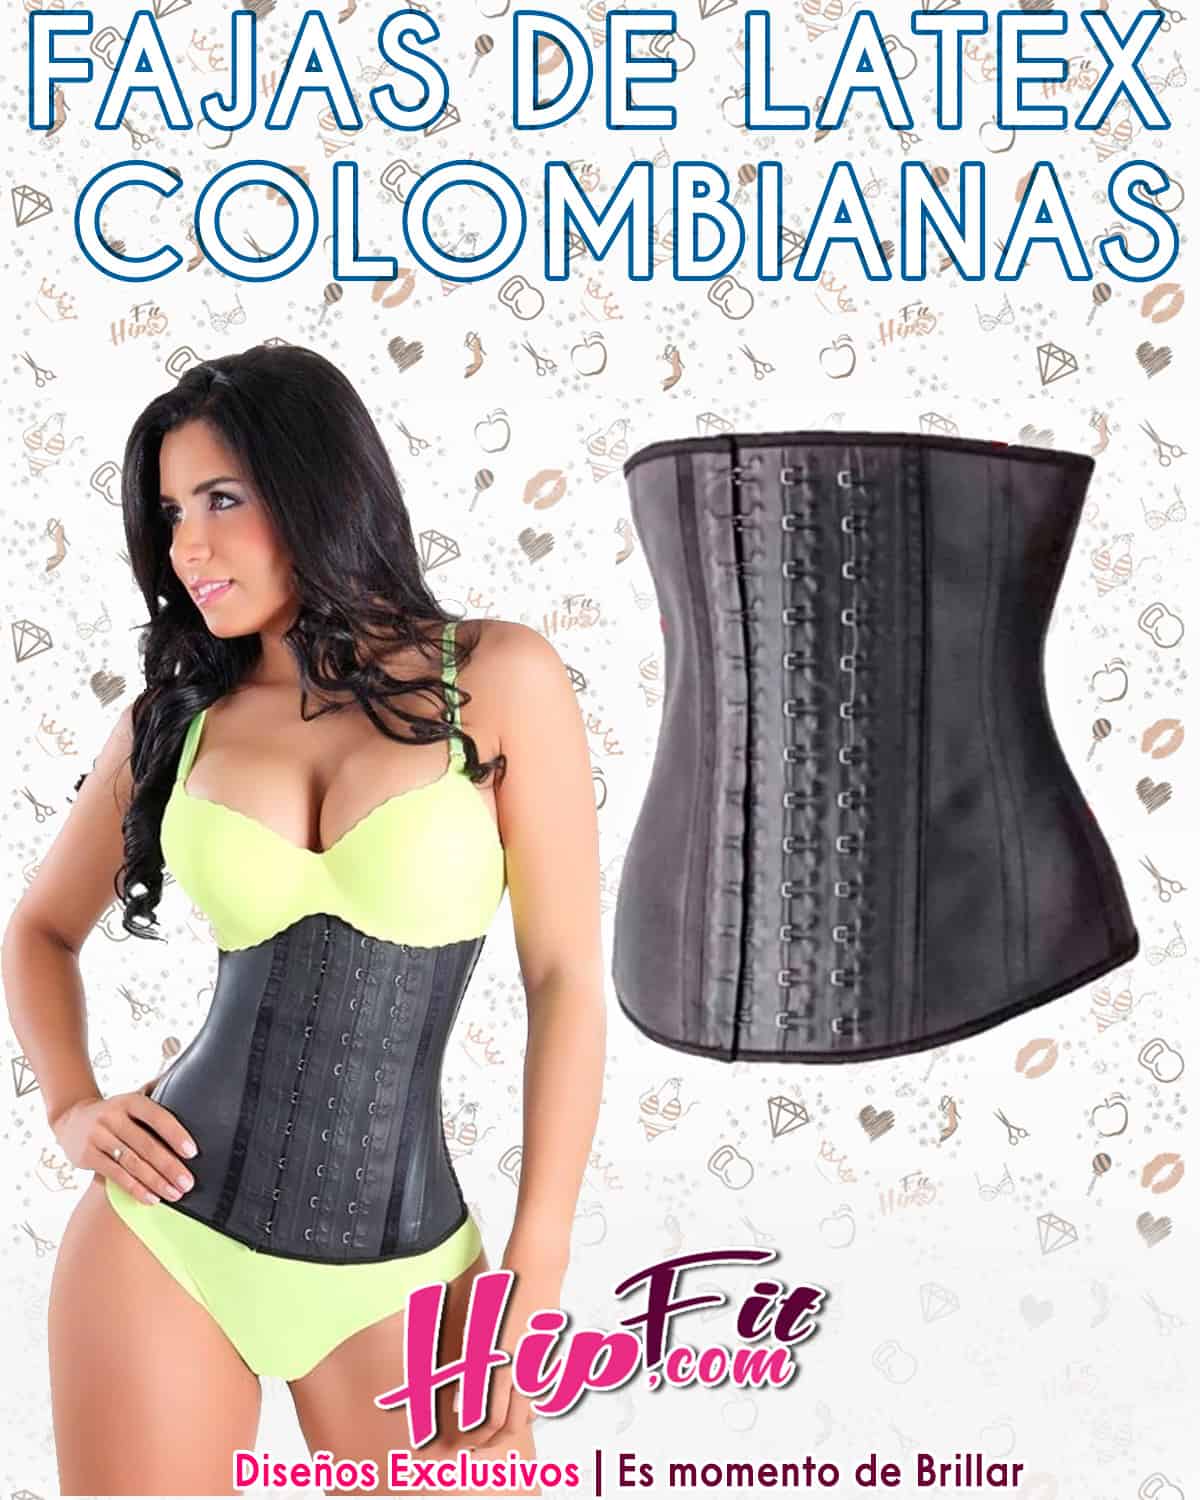 Fajas de Latex Colombianas | Moda Exclusiva para Chicas